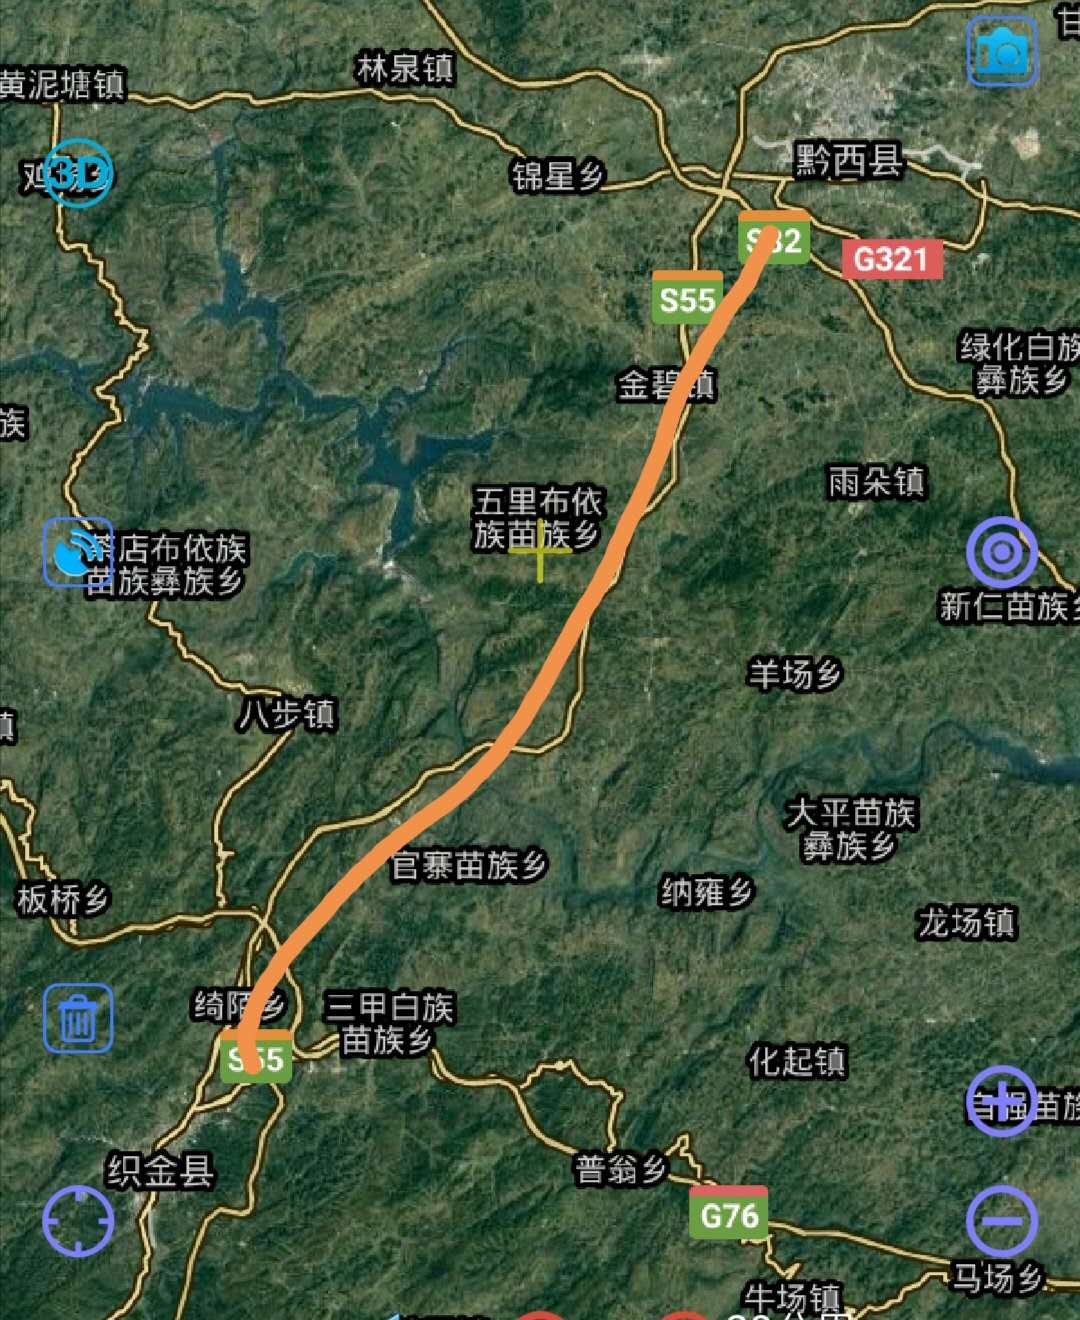 黔西县现在只需要修通30多公里的快速通道连接卫城镇即可.